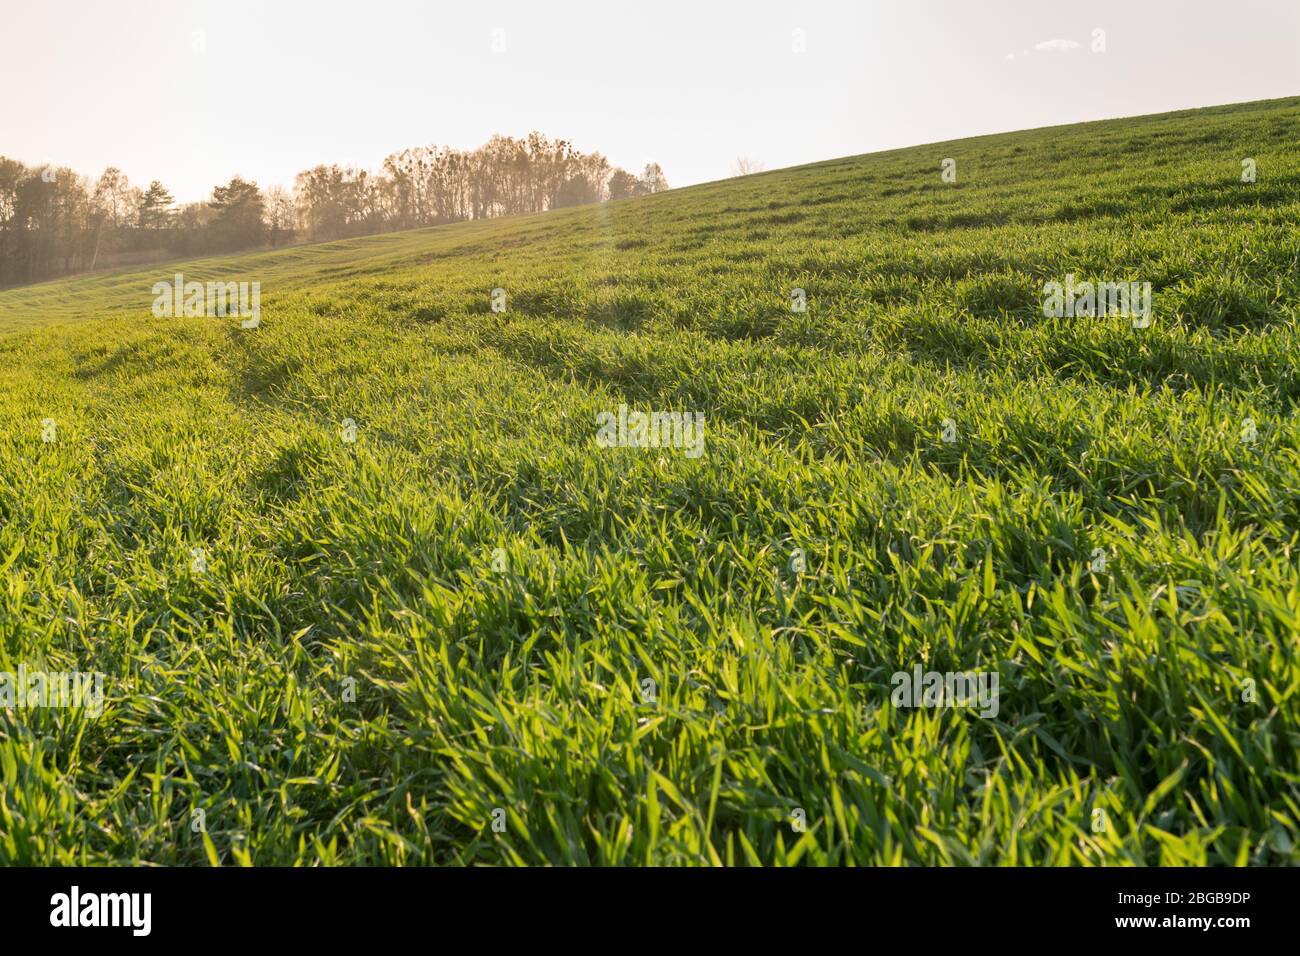 Vista panoramica del verde inverno campi coltivati in primavera. Concetto di industria agricola Foto Stock